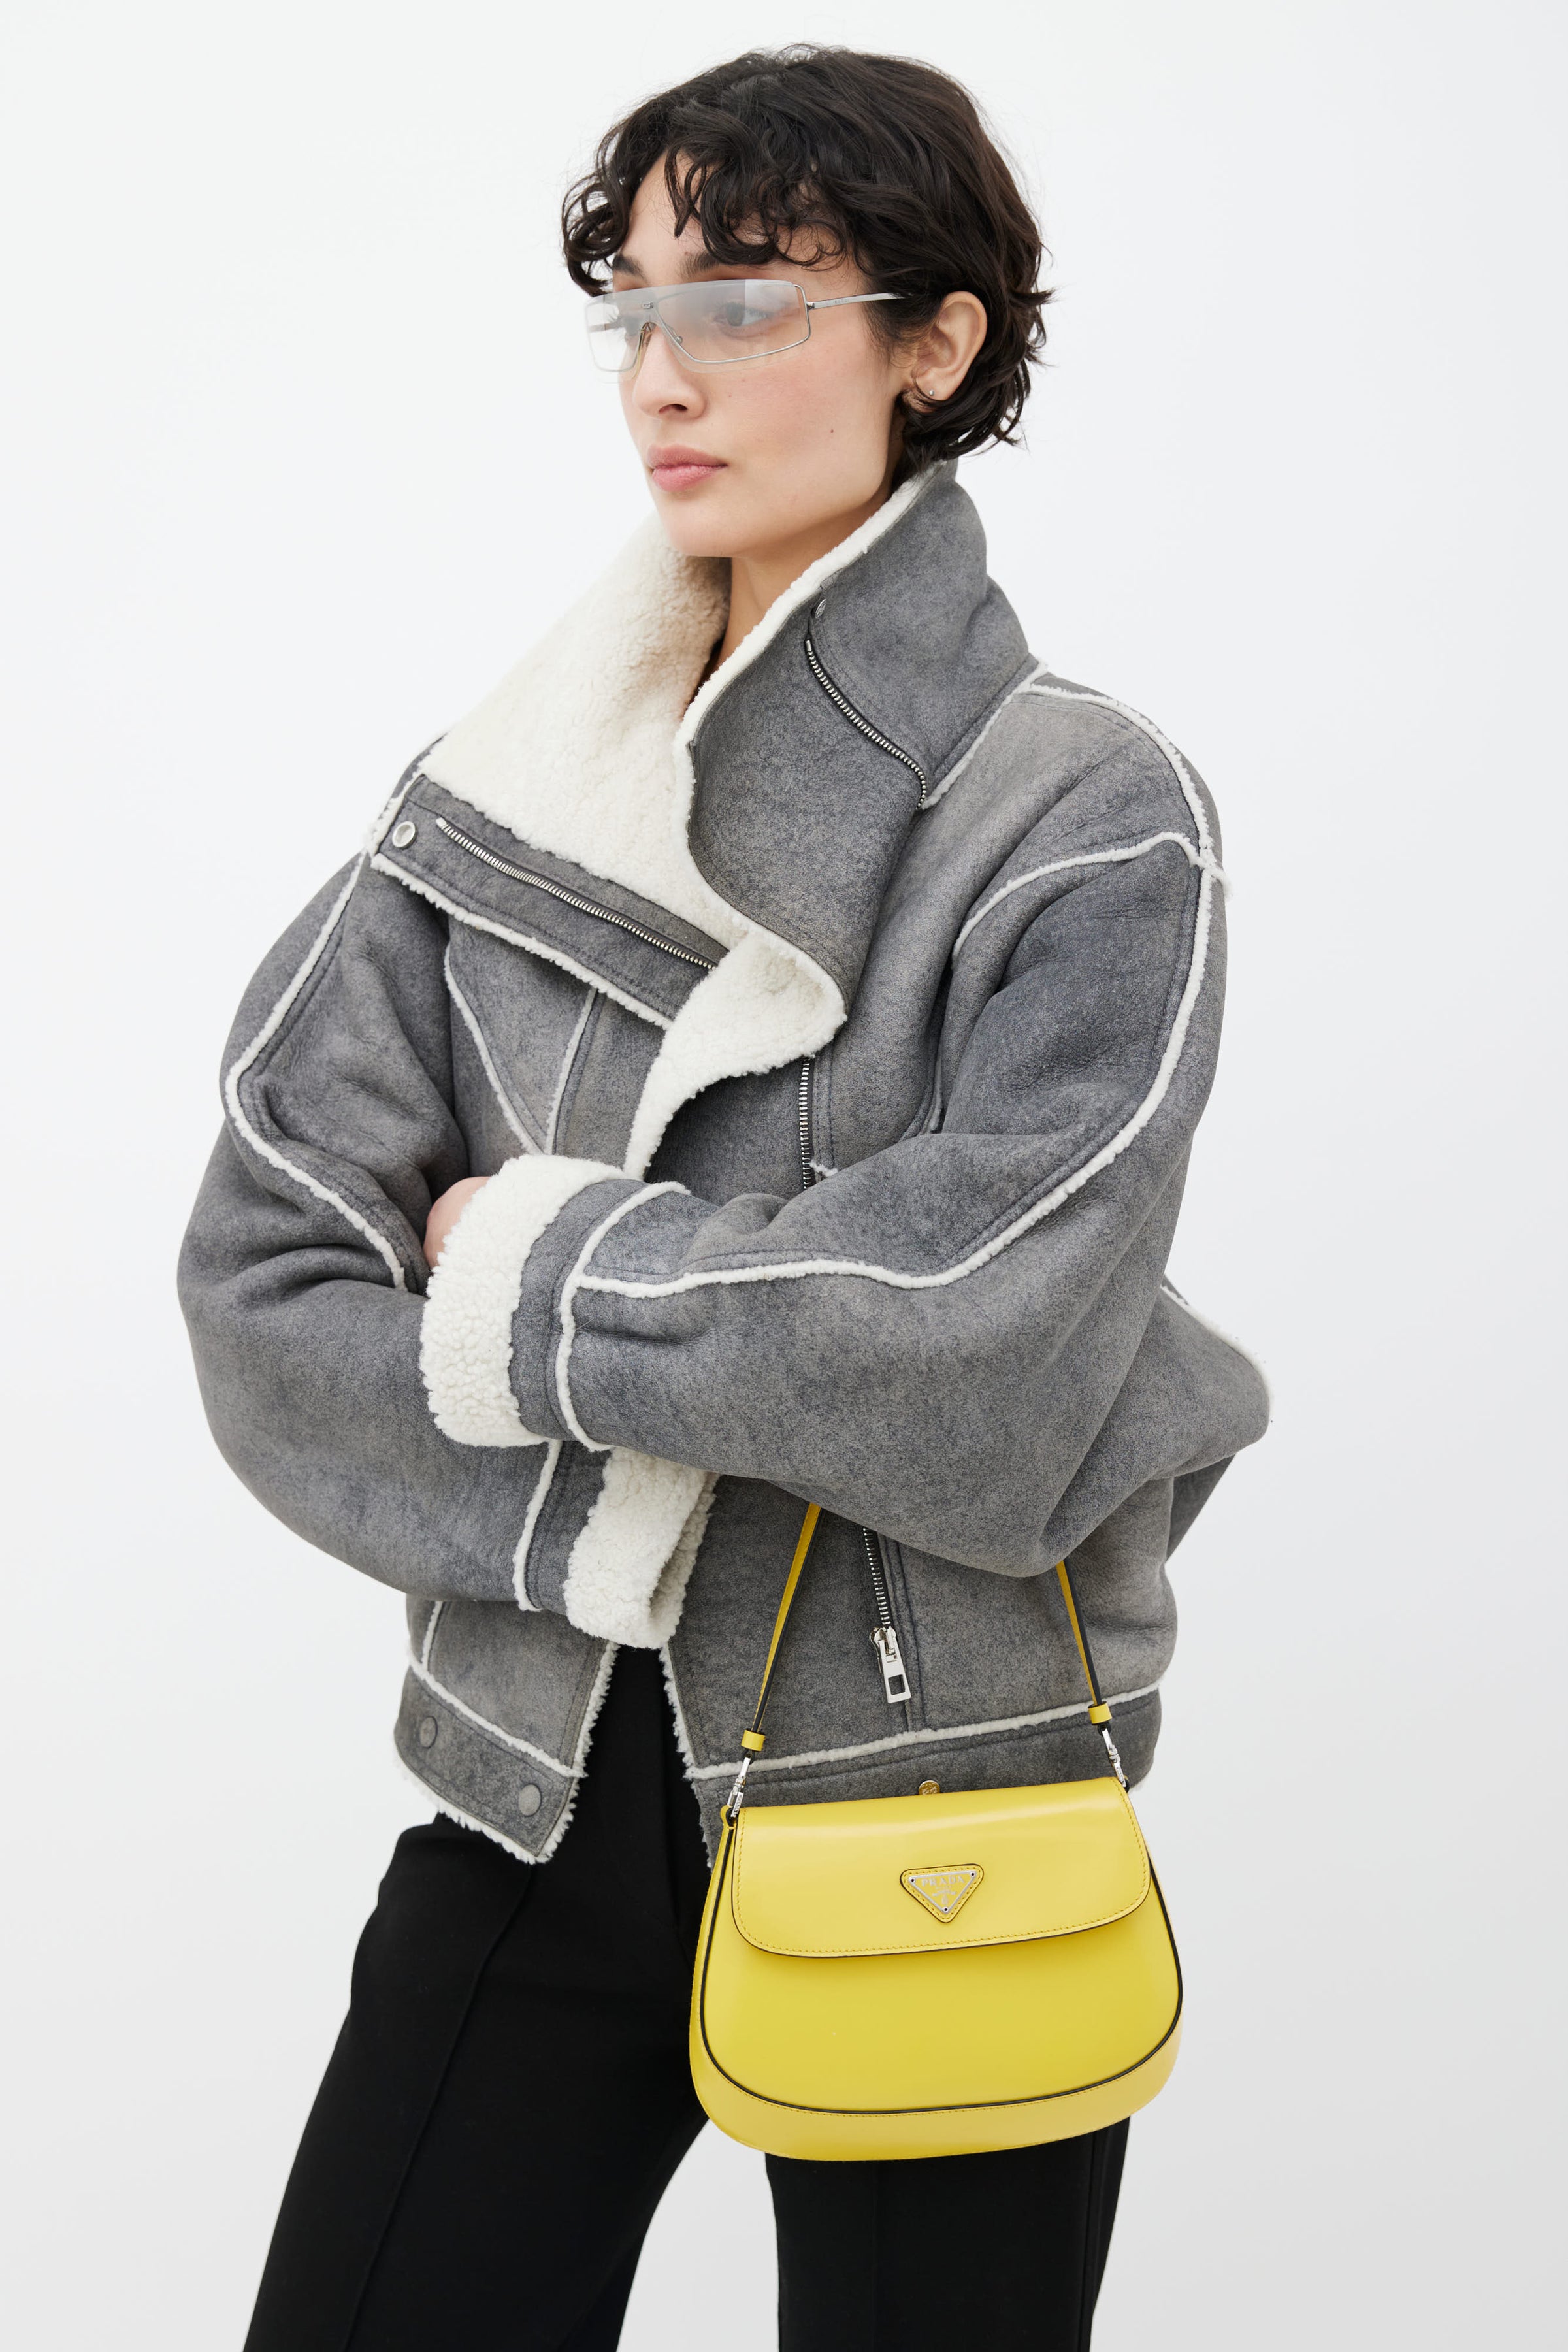 Shop Prada Cleo Brushed Leather Shoulder Bag